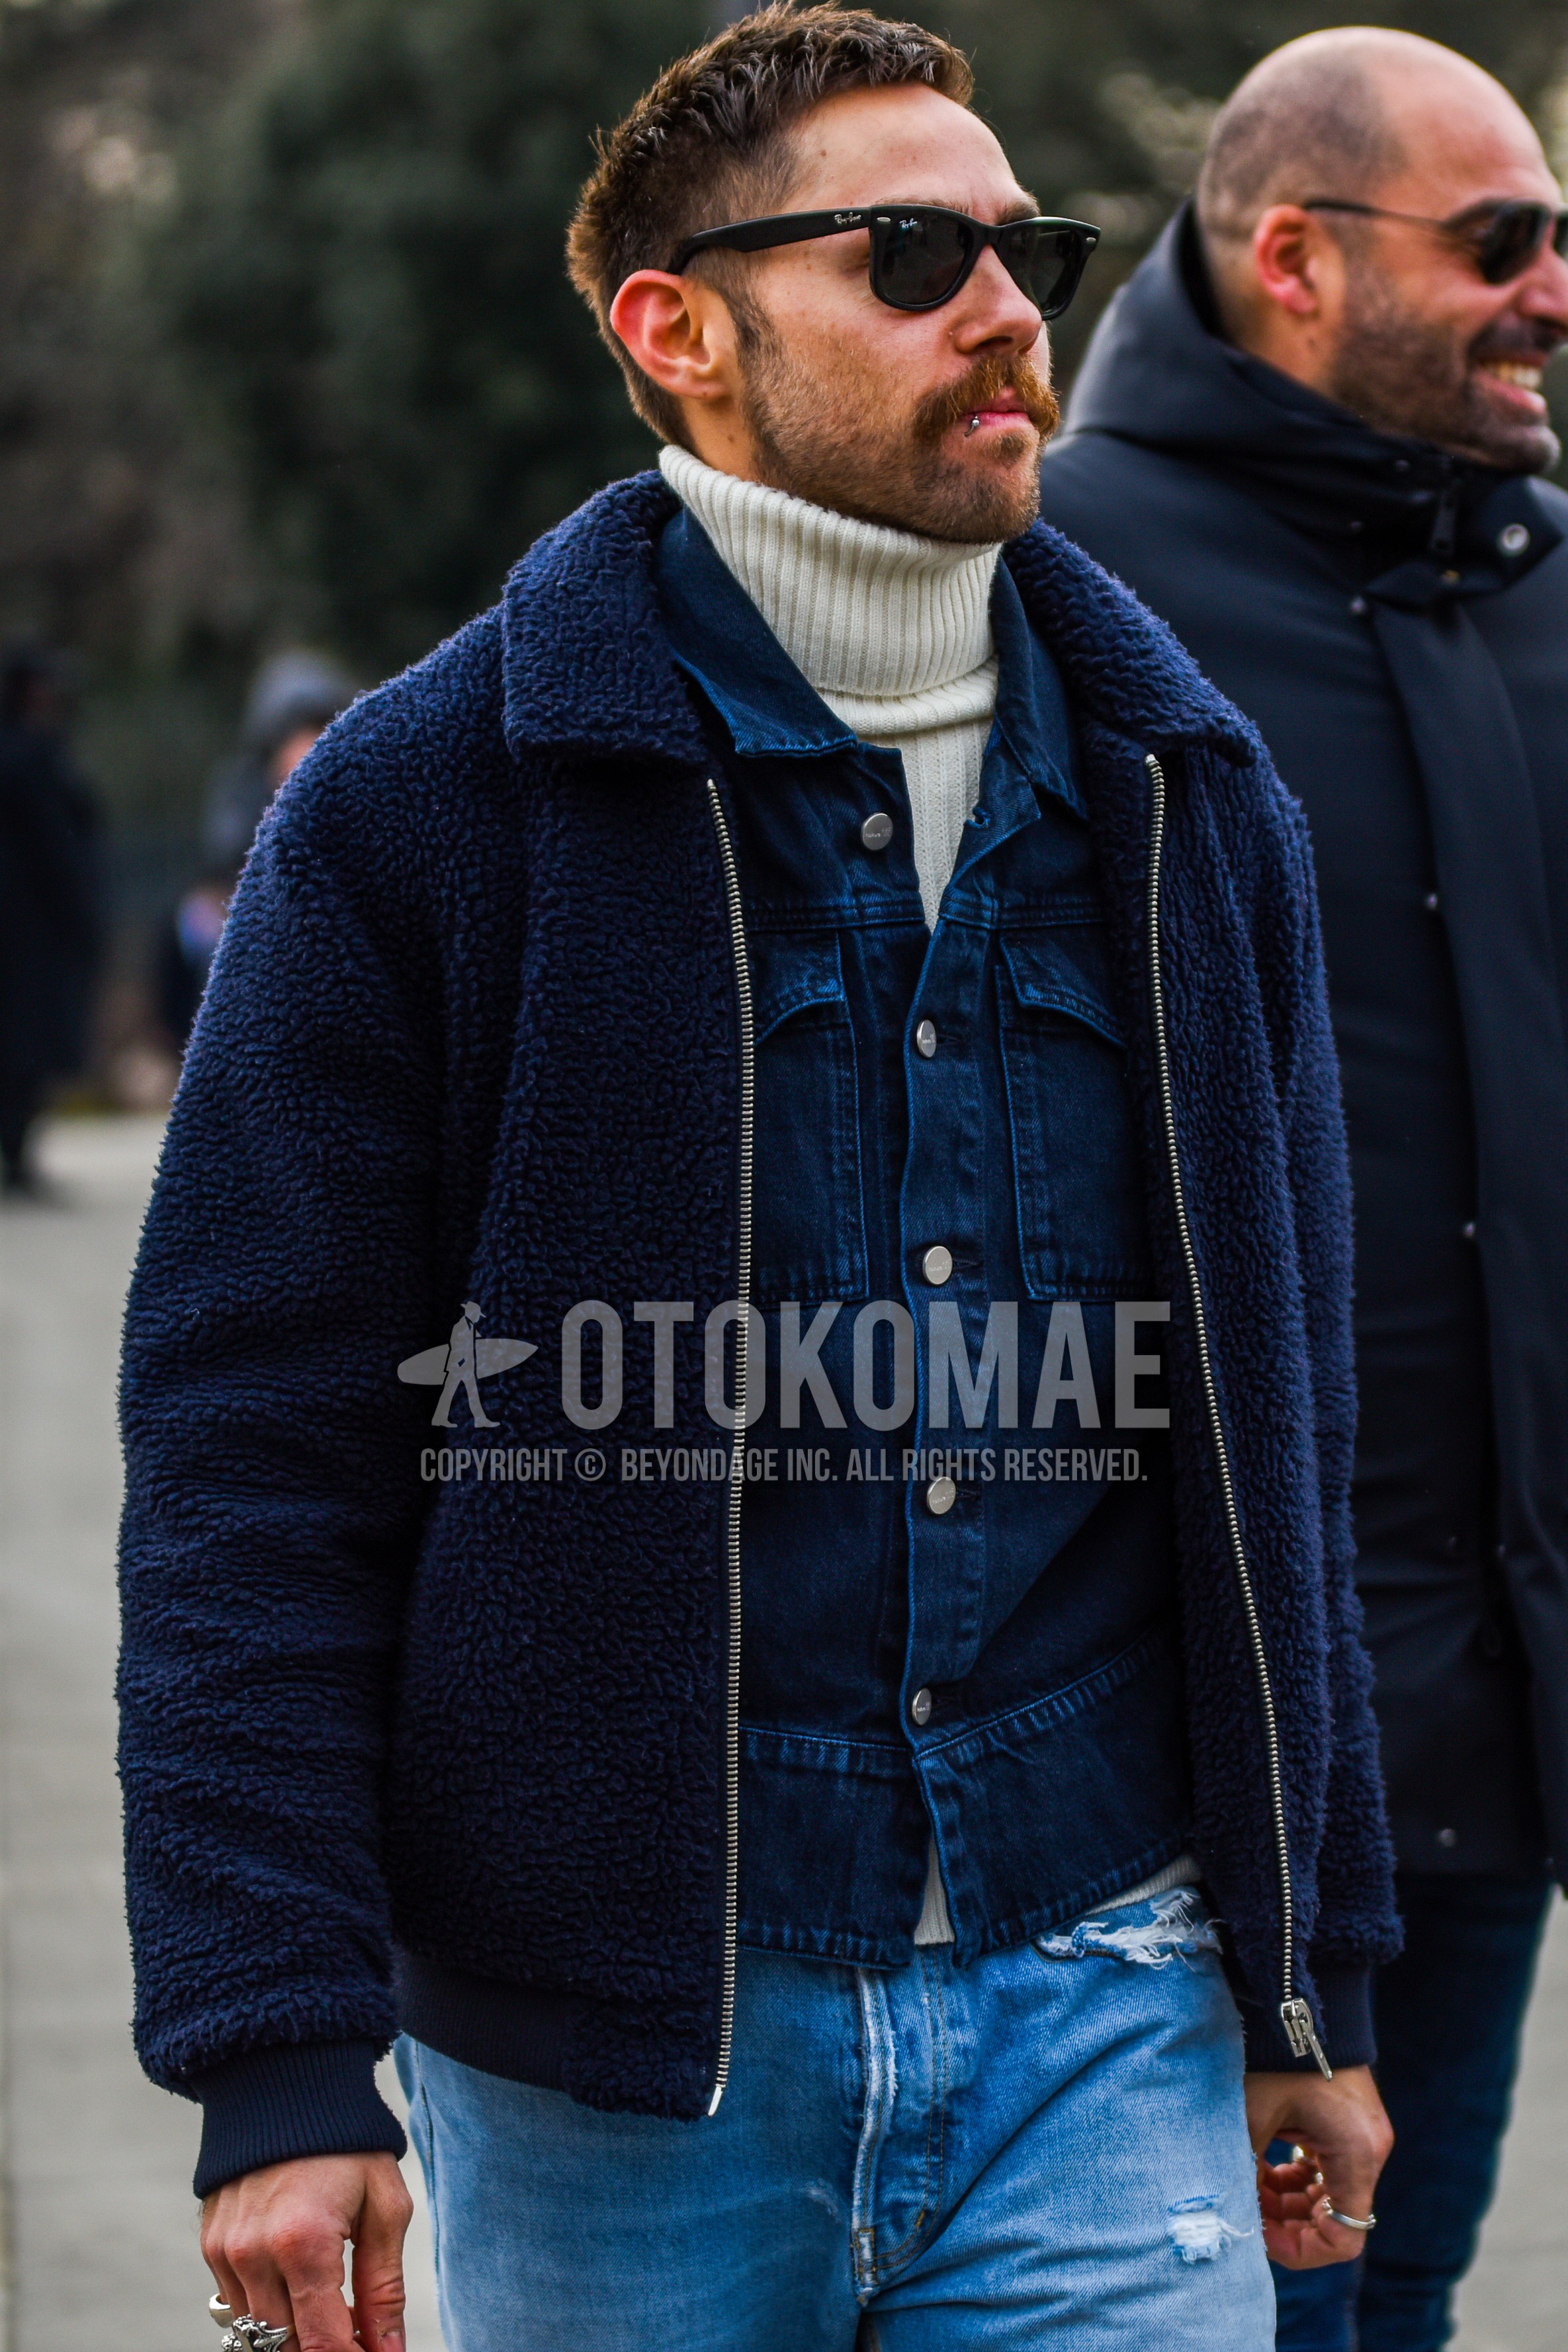 Men's autumn winter outfit with black plain sunglasses, navy plain fleece jacket, navy plain denim jacket, white plain turtleneck knit, blue plain damaged jeans.